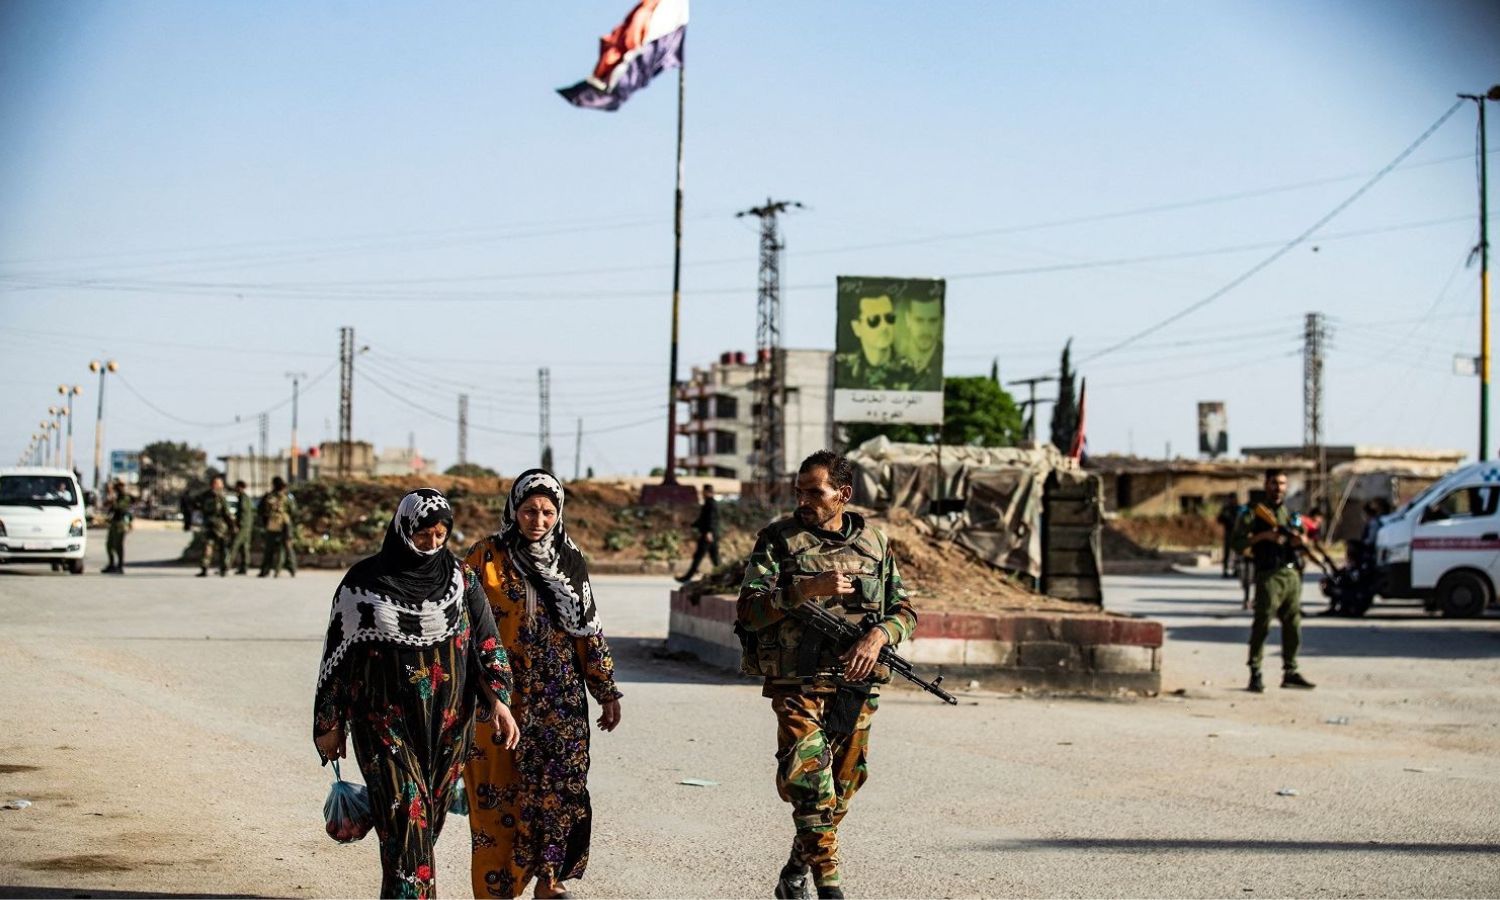 عنصر من قوات النظام السوري يسير بجانب سيدتين قرب حاجز عسكري قرب مدينة القامشلي شمال شرقي سوريا- 27 من نيسان 2021 (AFP)